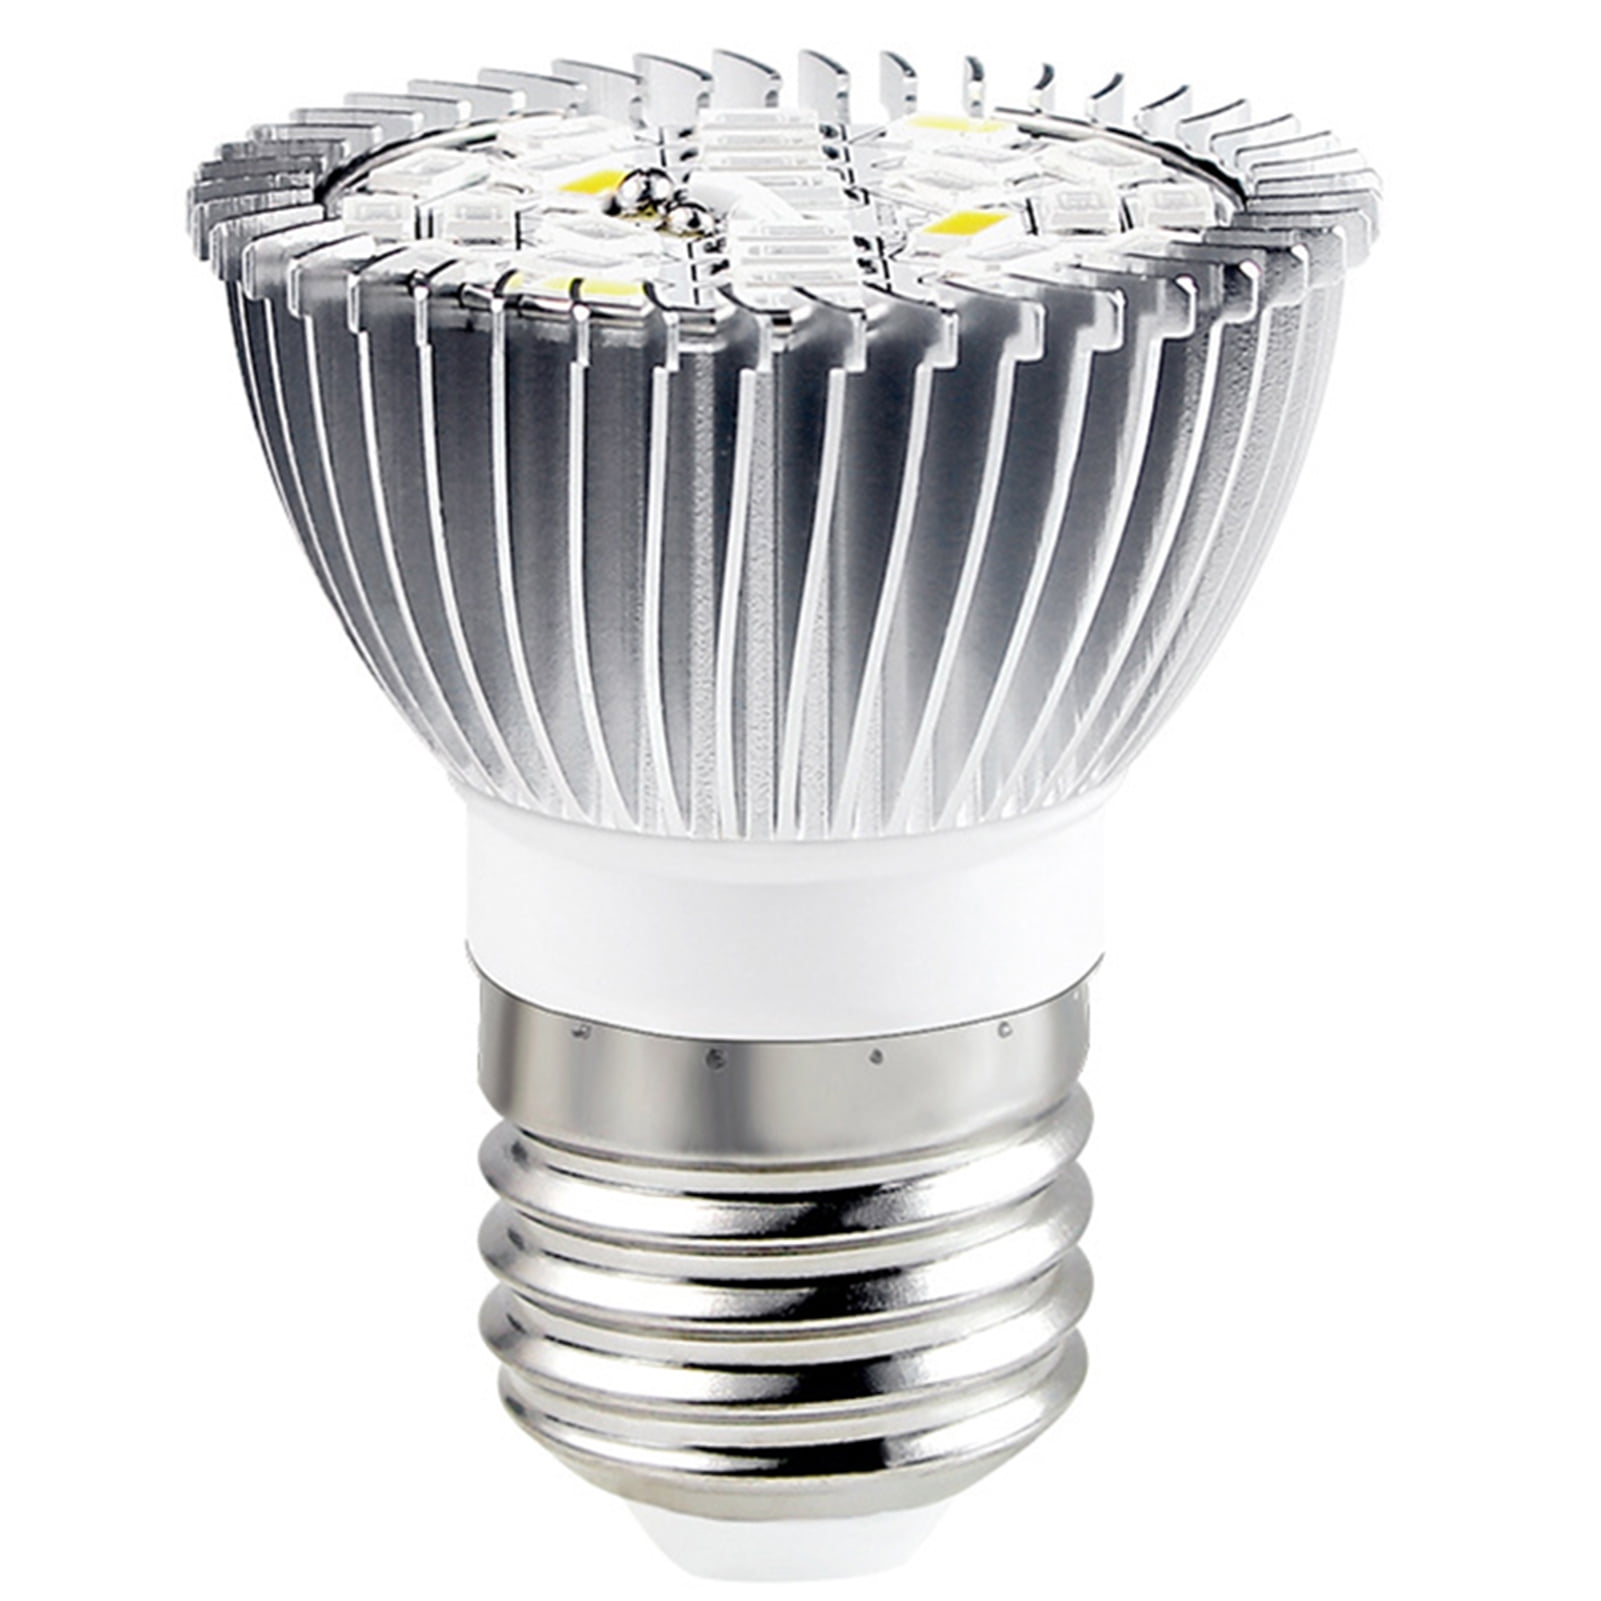 E27 18W LED Grow Light Full Spectrum Lamp Bulbs for Flower Hydro Plants Growing 